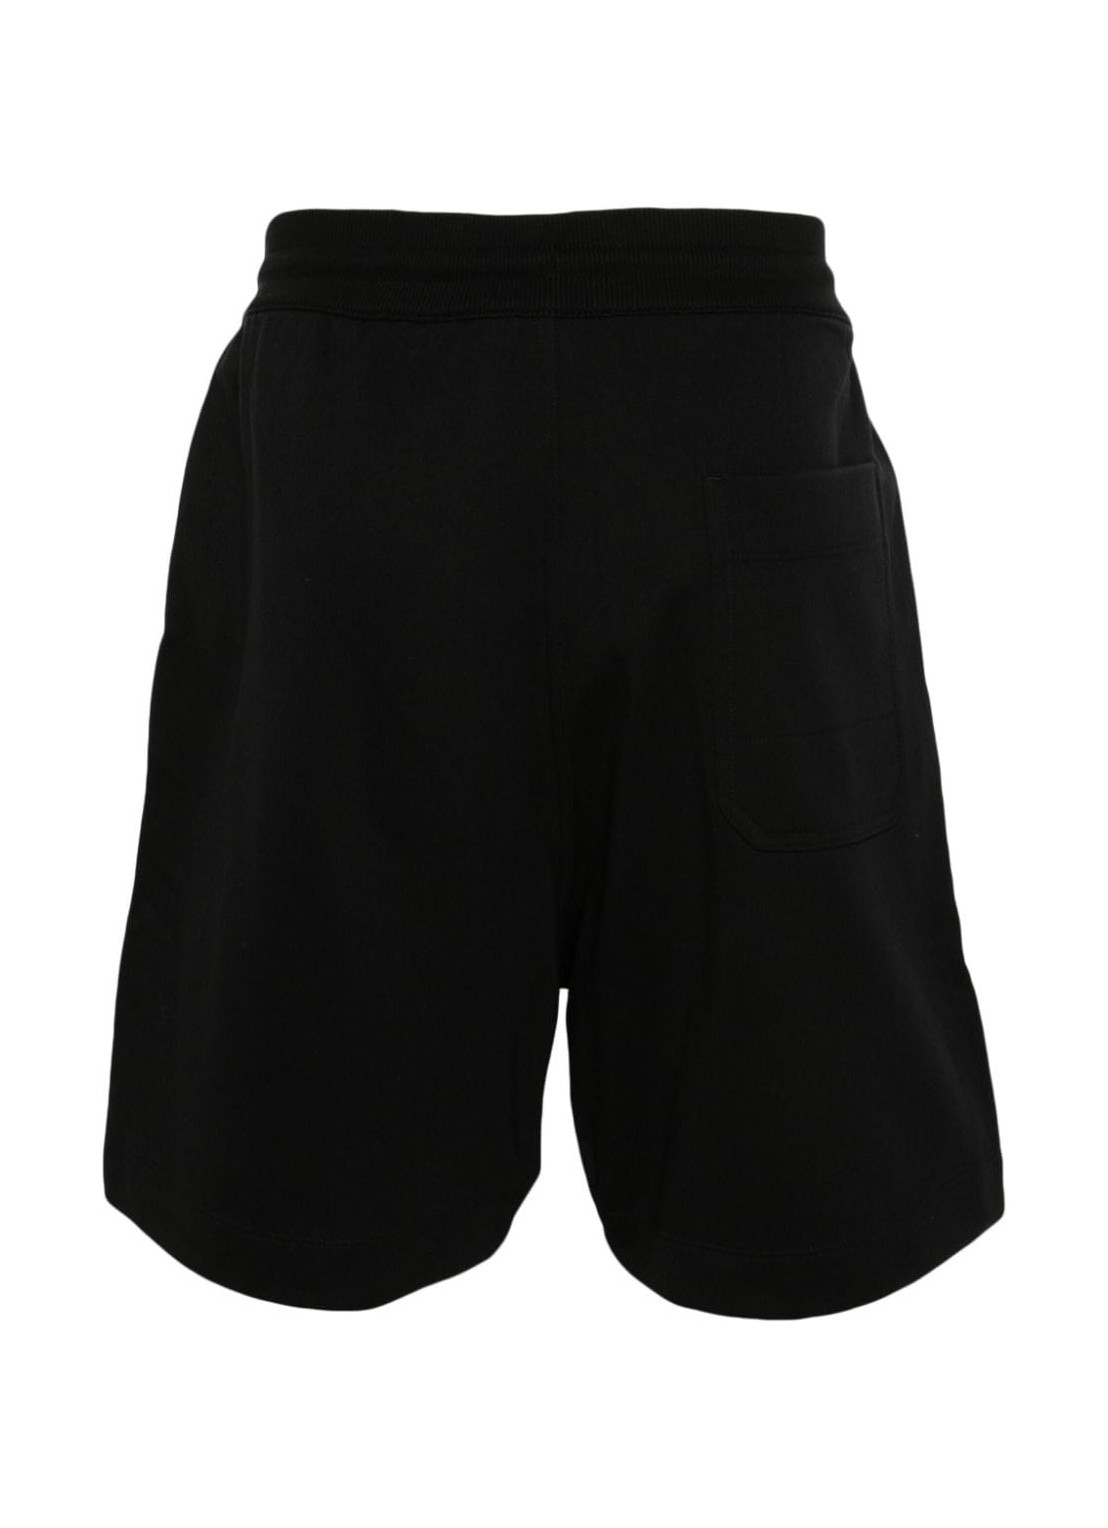 Pantalon corto y3 short pant man ft shorts iv5576 black talla negro
 